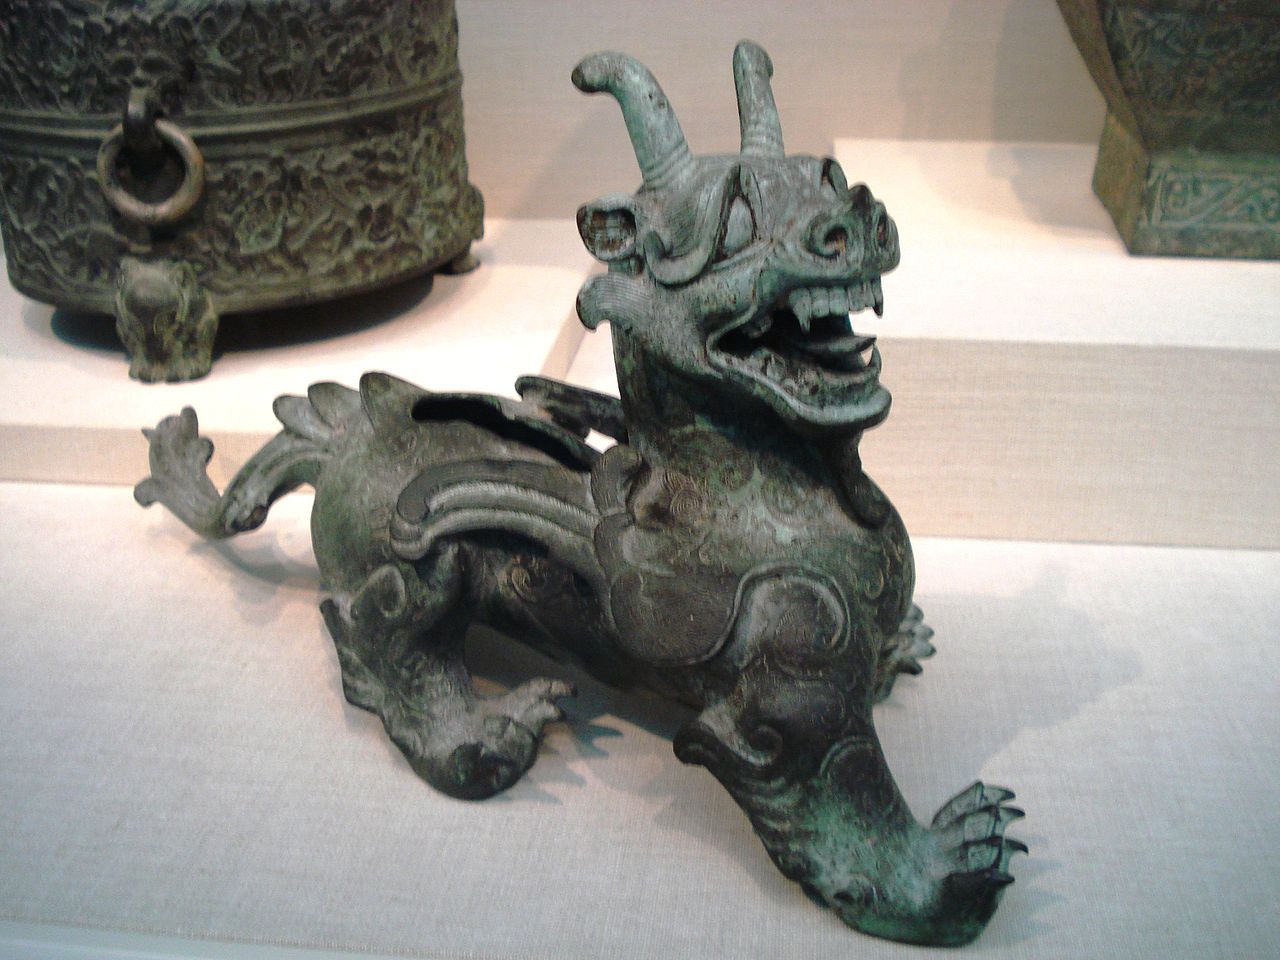 et av de mest kjente kunstverkene fra Han-dynastiets tid